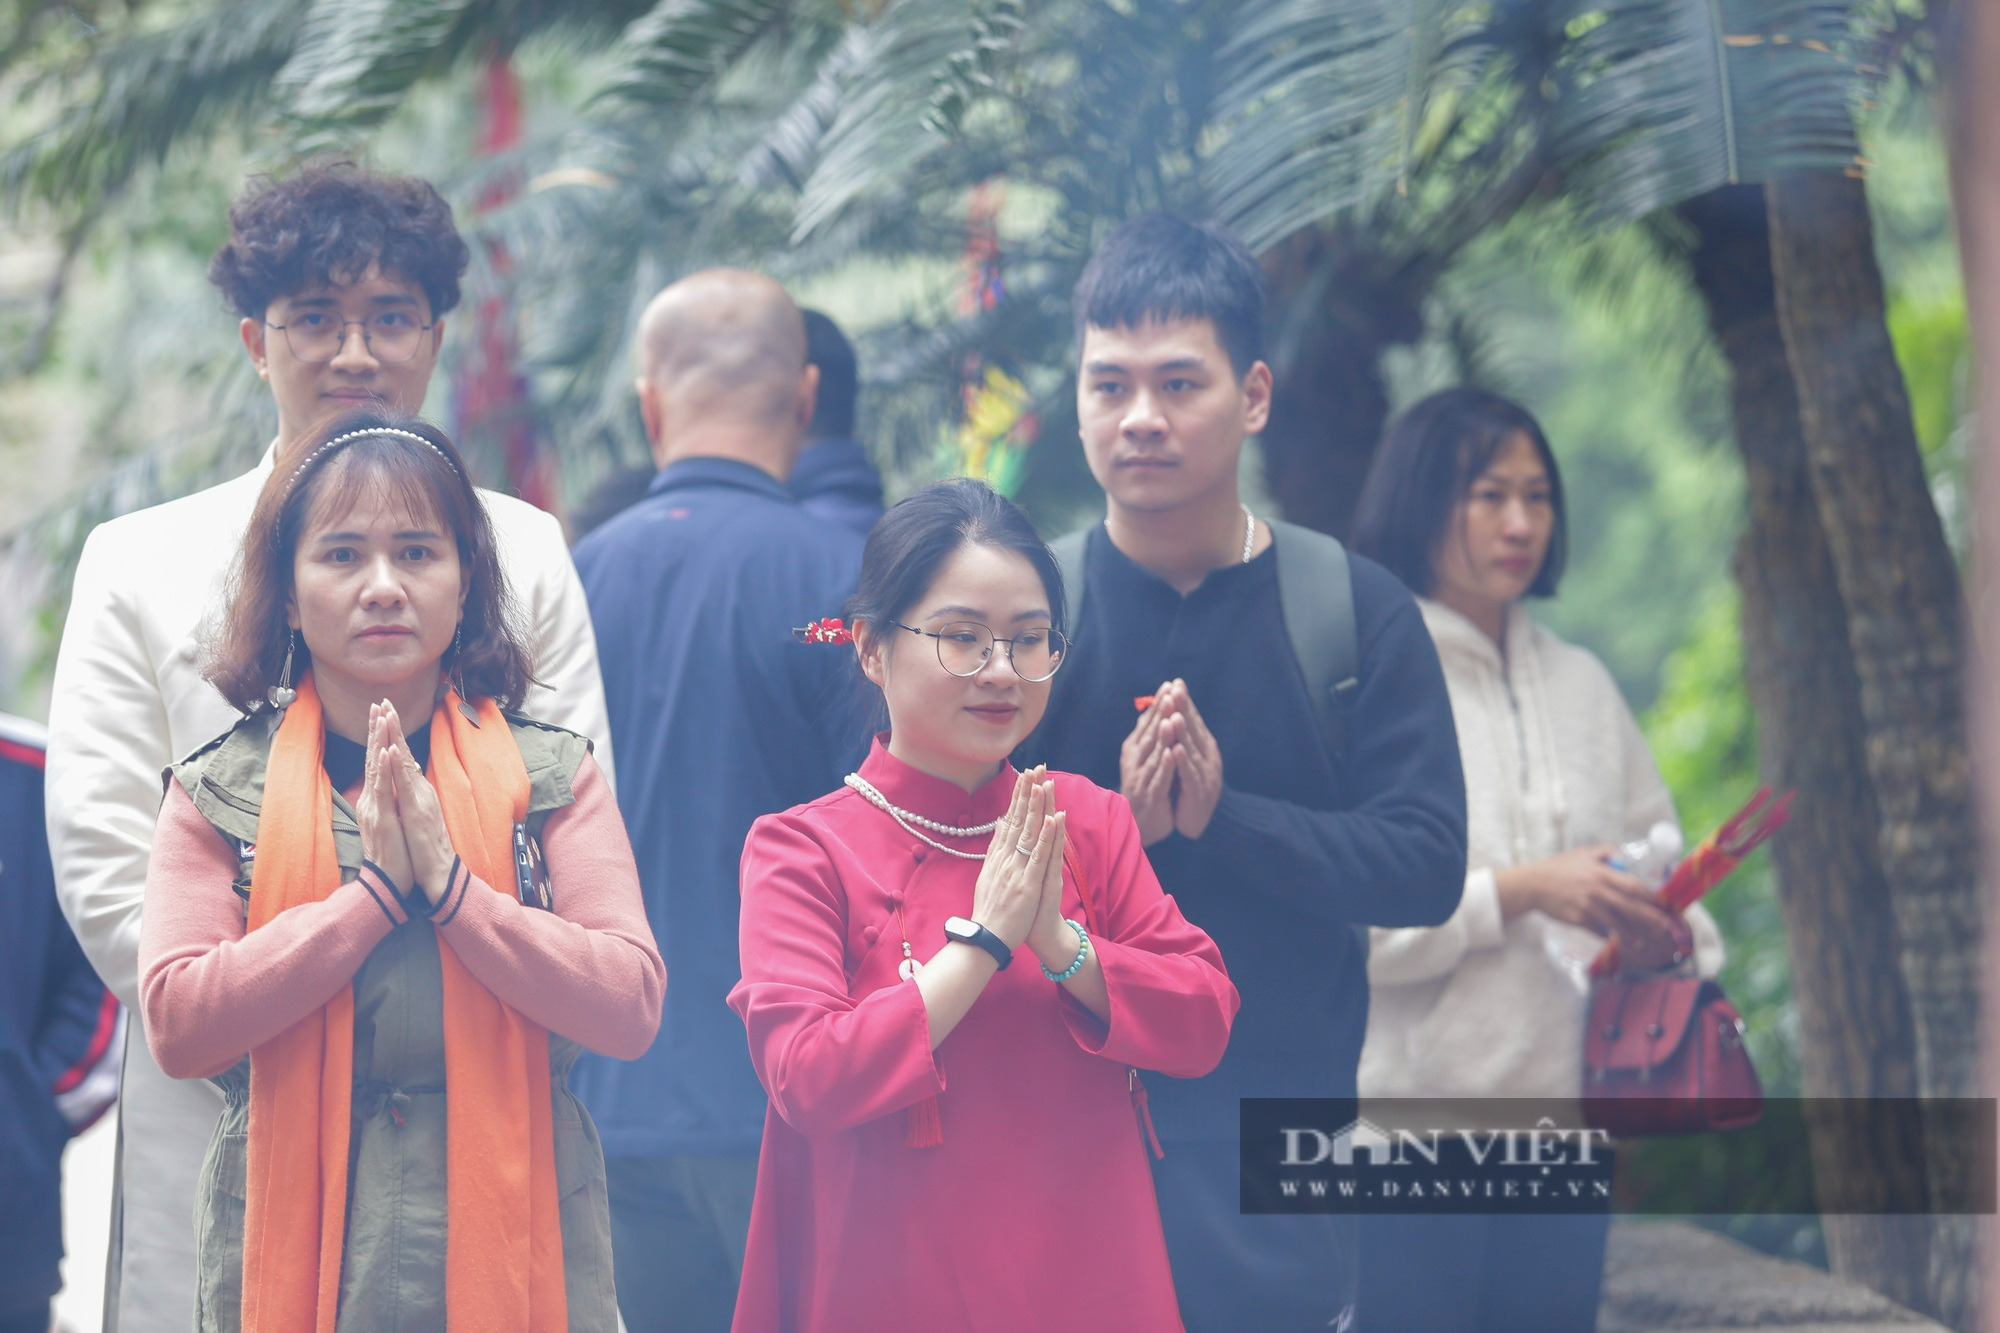 
Hàng vạn người dân thập phương đi lễ đền Hùng cầu may ngày đầu xuân - Ảnh 5.